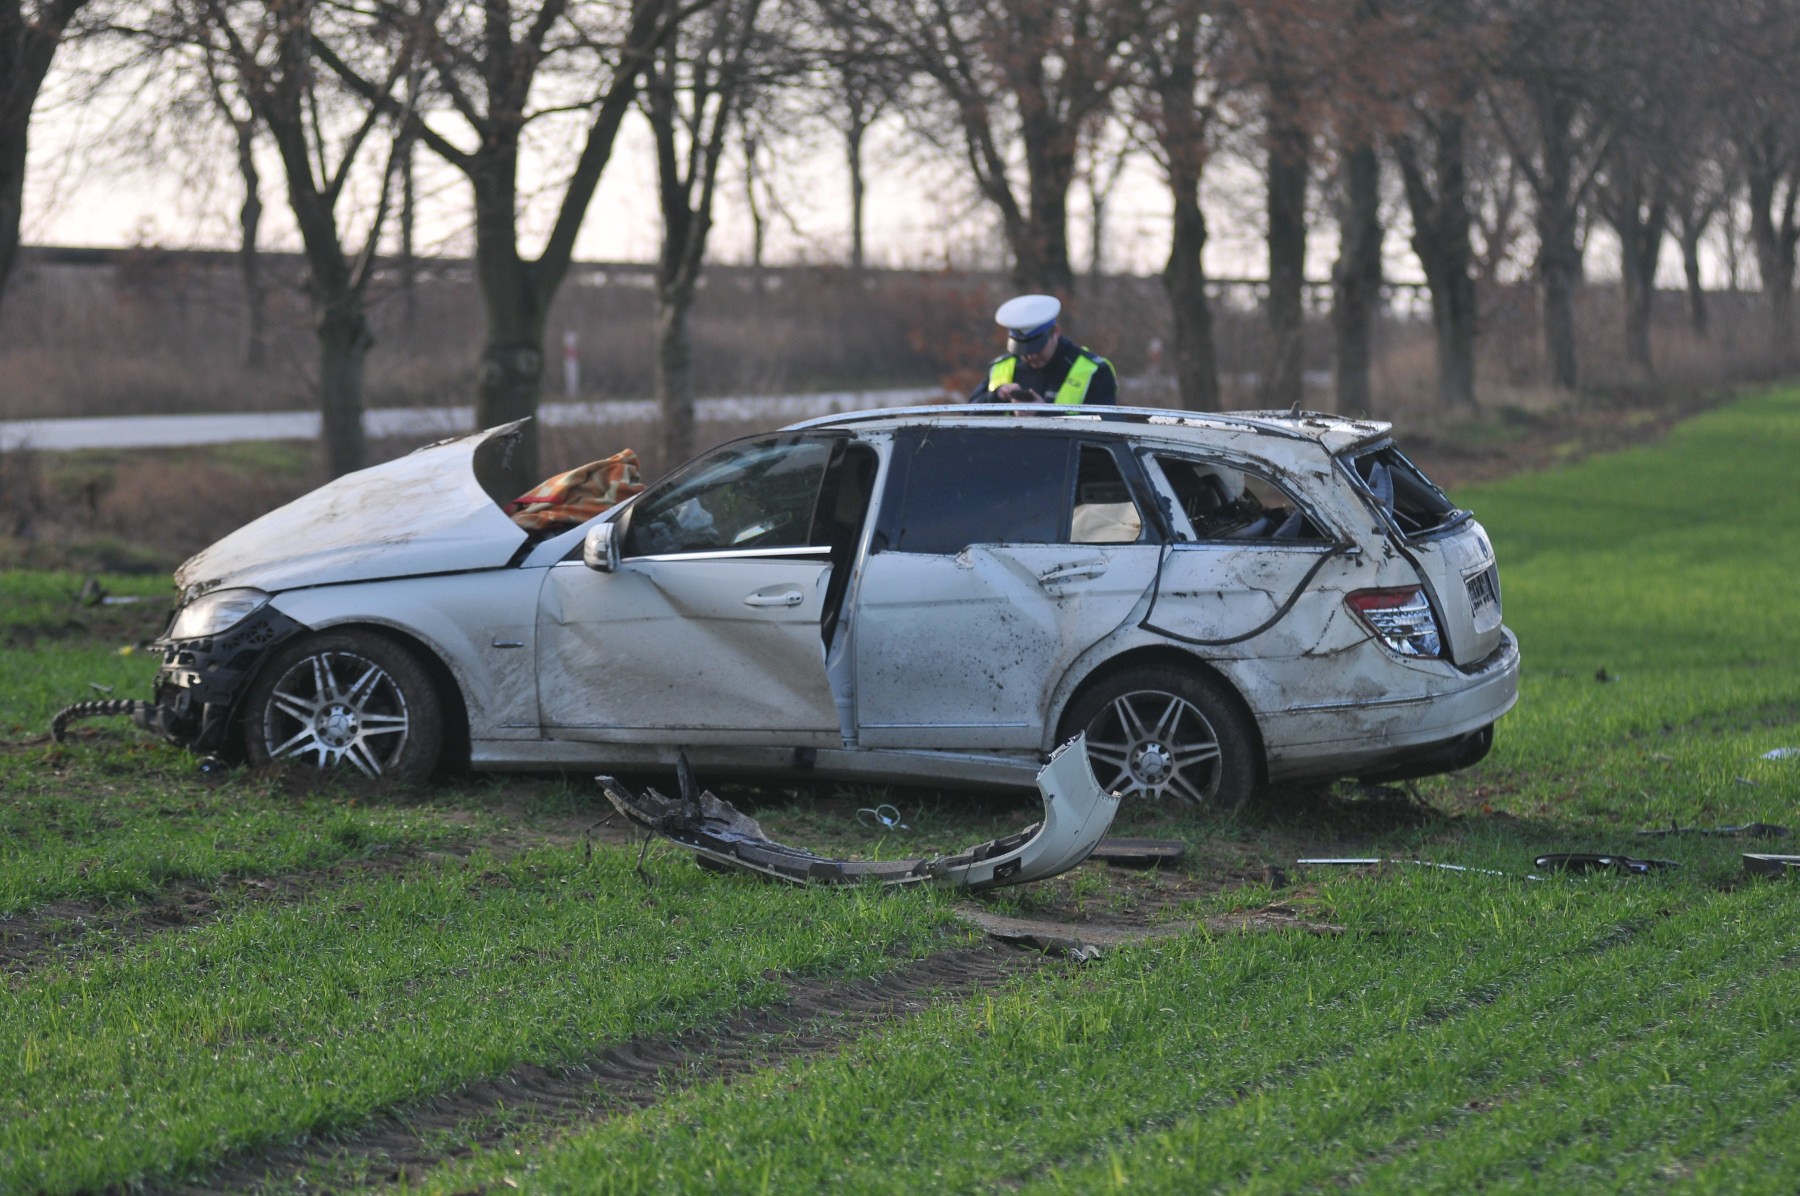 Makabrycznie wyglądający wypadek pod Gorzowem. Mercedes